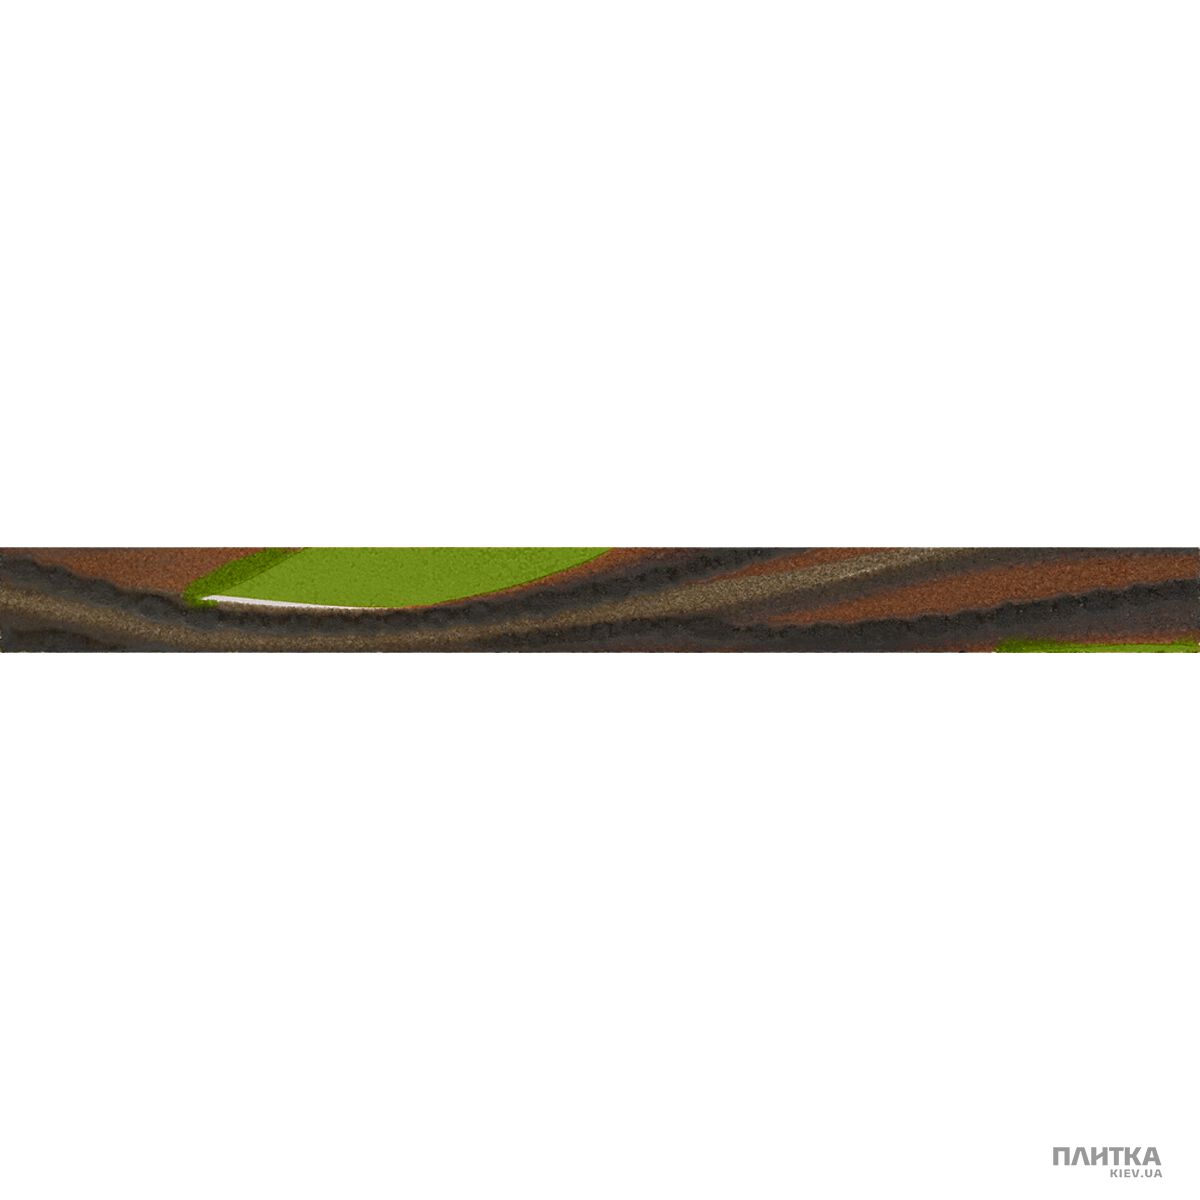 Плитка Imola Nuvole L.VENTO V MIX фриз коричневый,салатовый